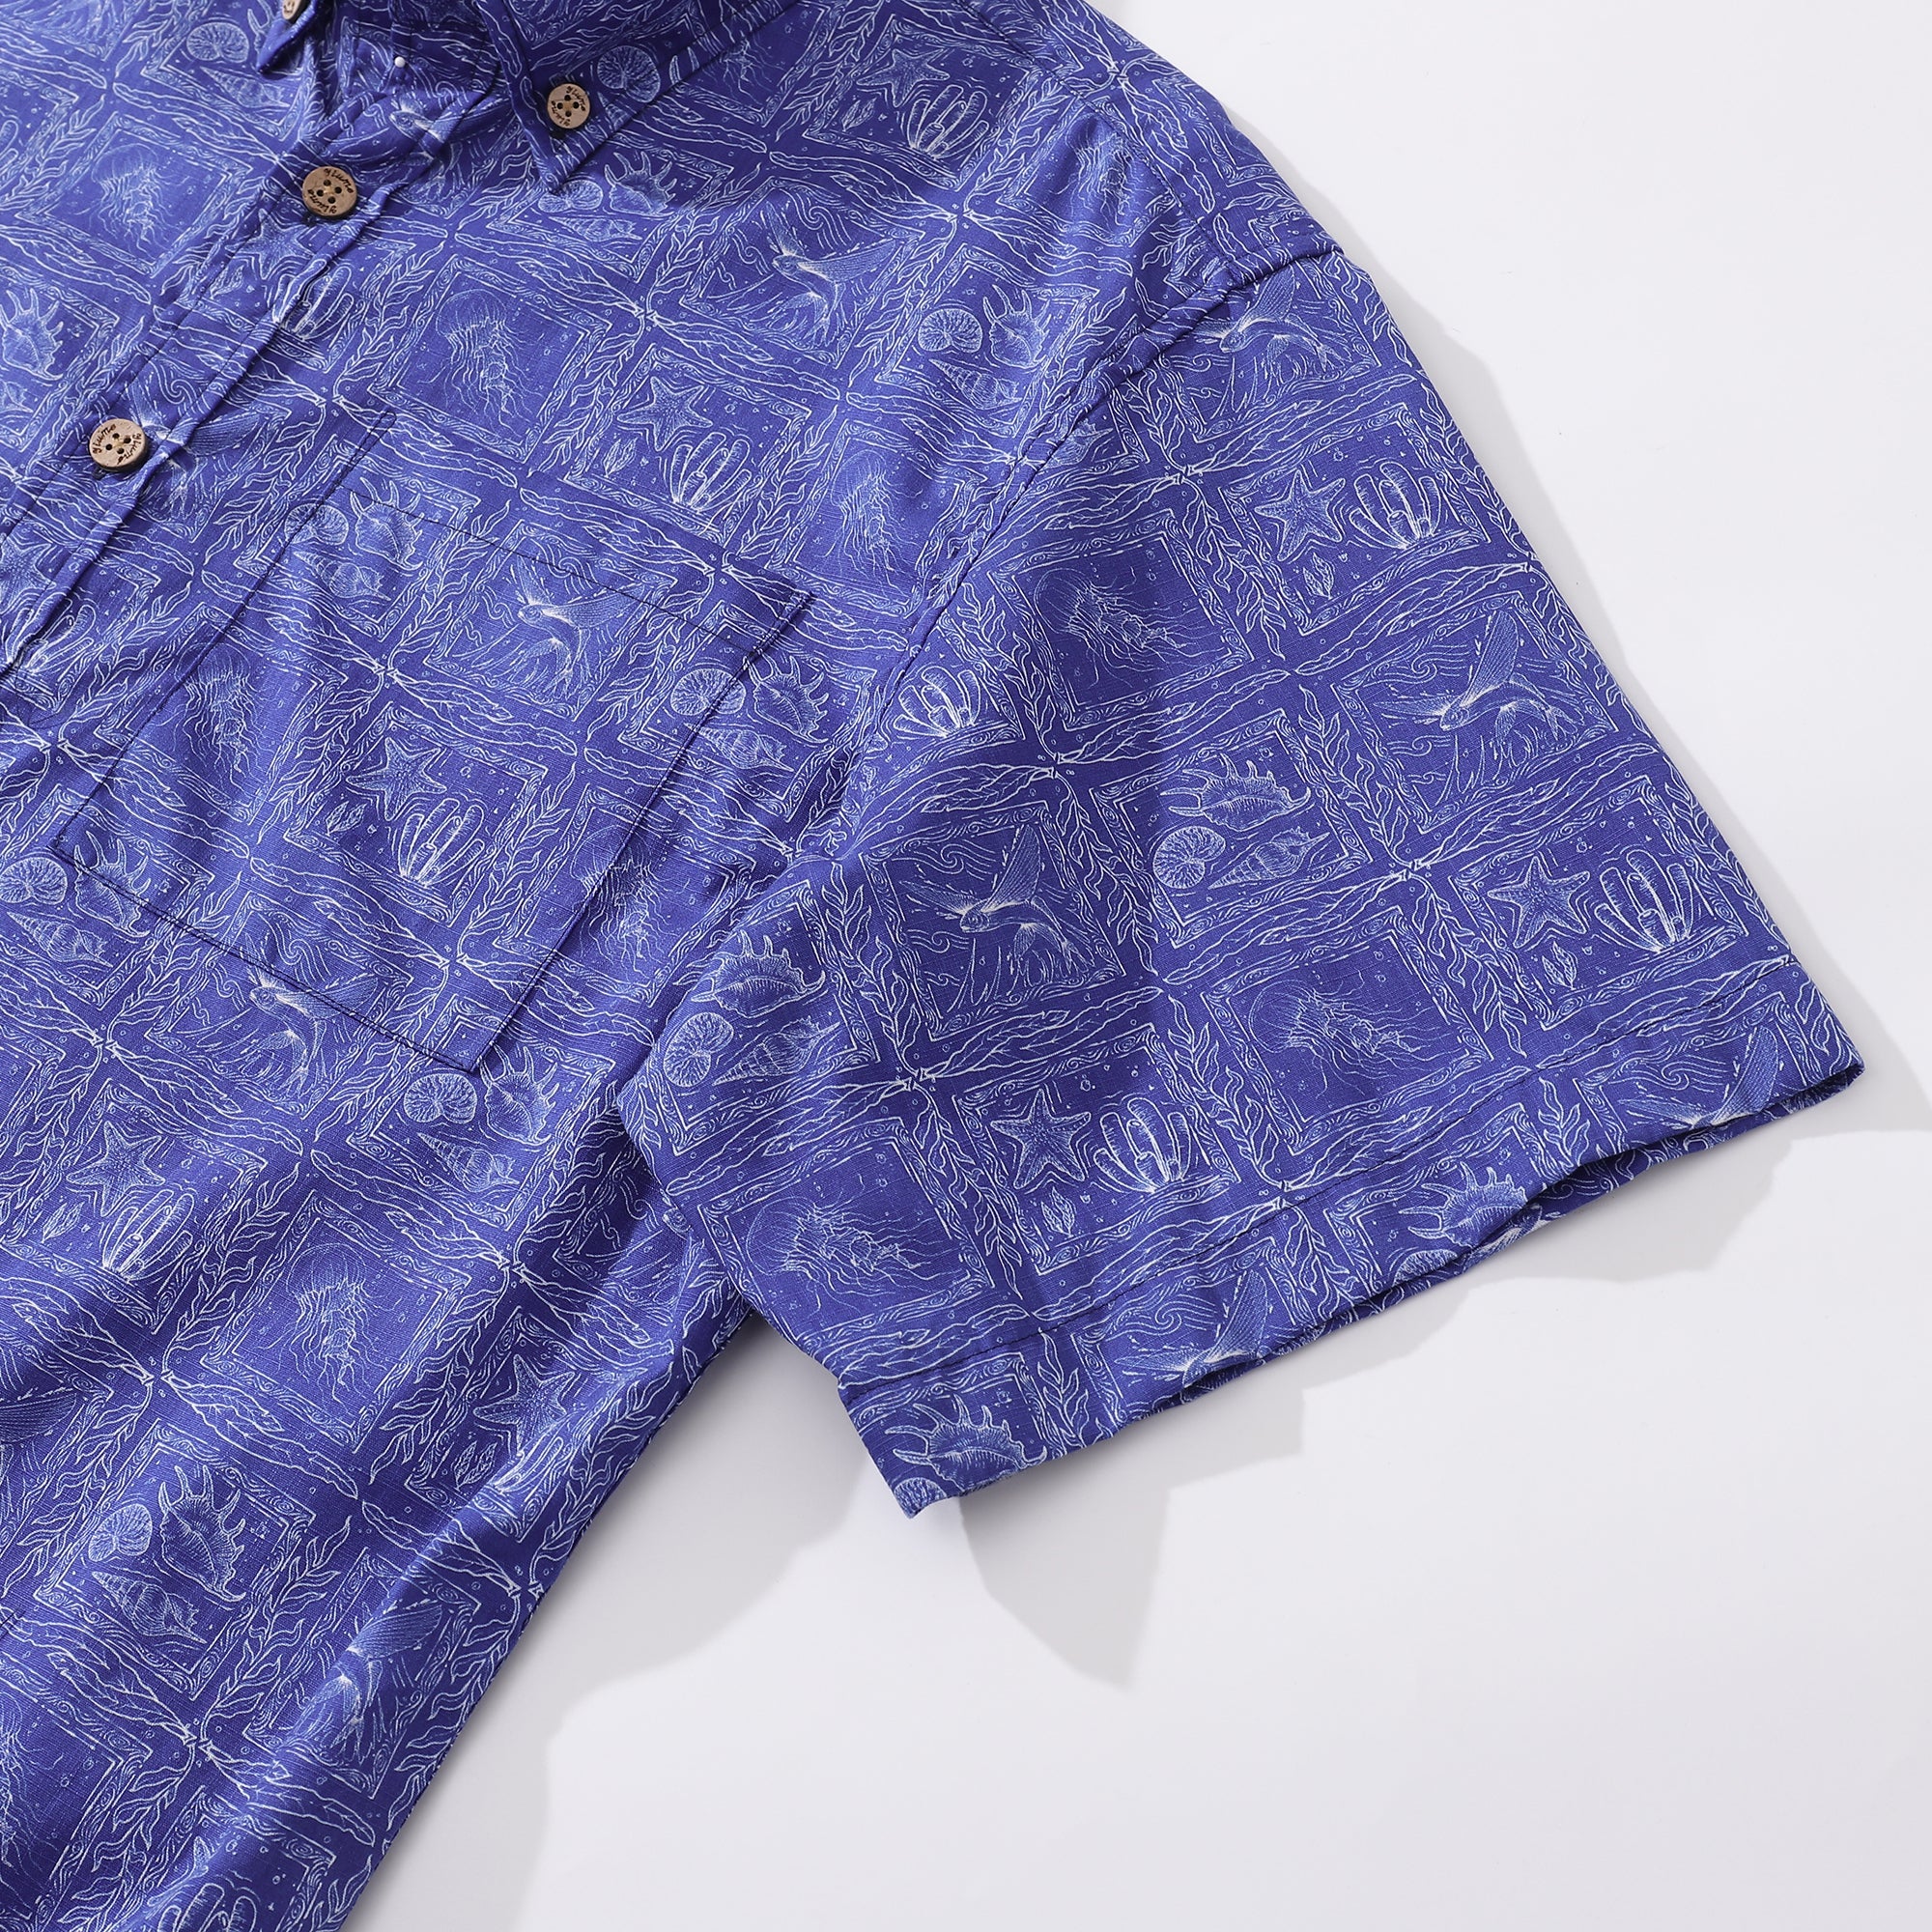 Camisa Yiume Aloha para hombre Camisa hawaiana de manga corta estampada con combinación Ocean Life y Line - Azul marino